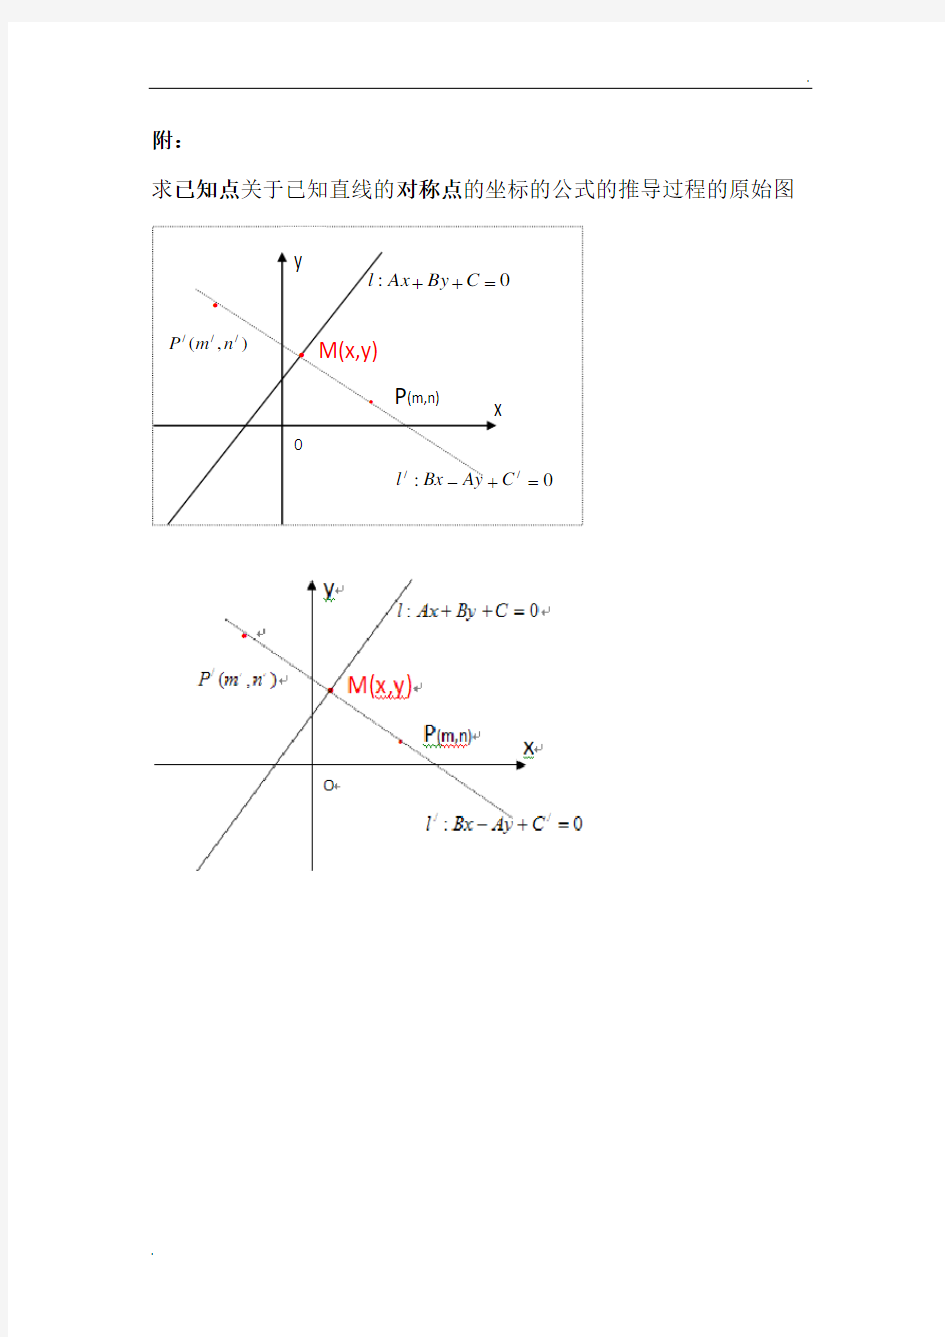 求已知点关于已知直线的对称点的坐标的公式的推导过程